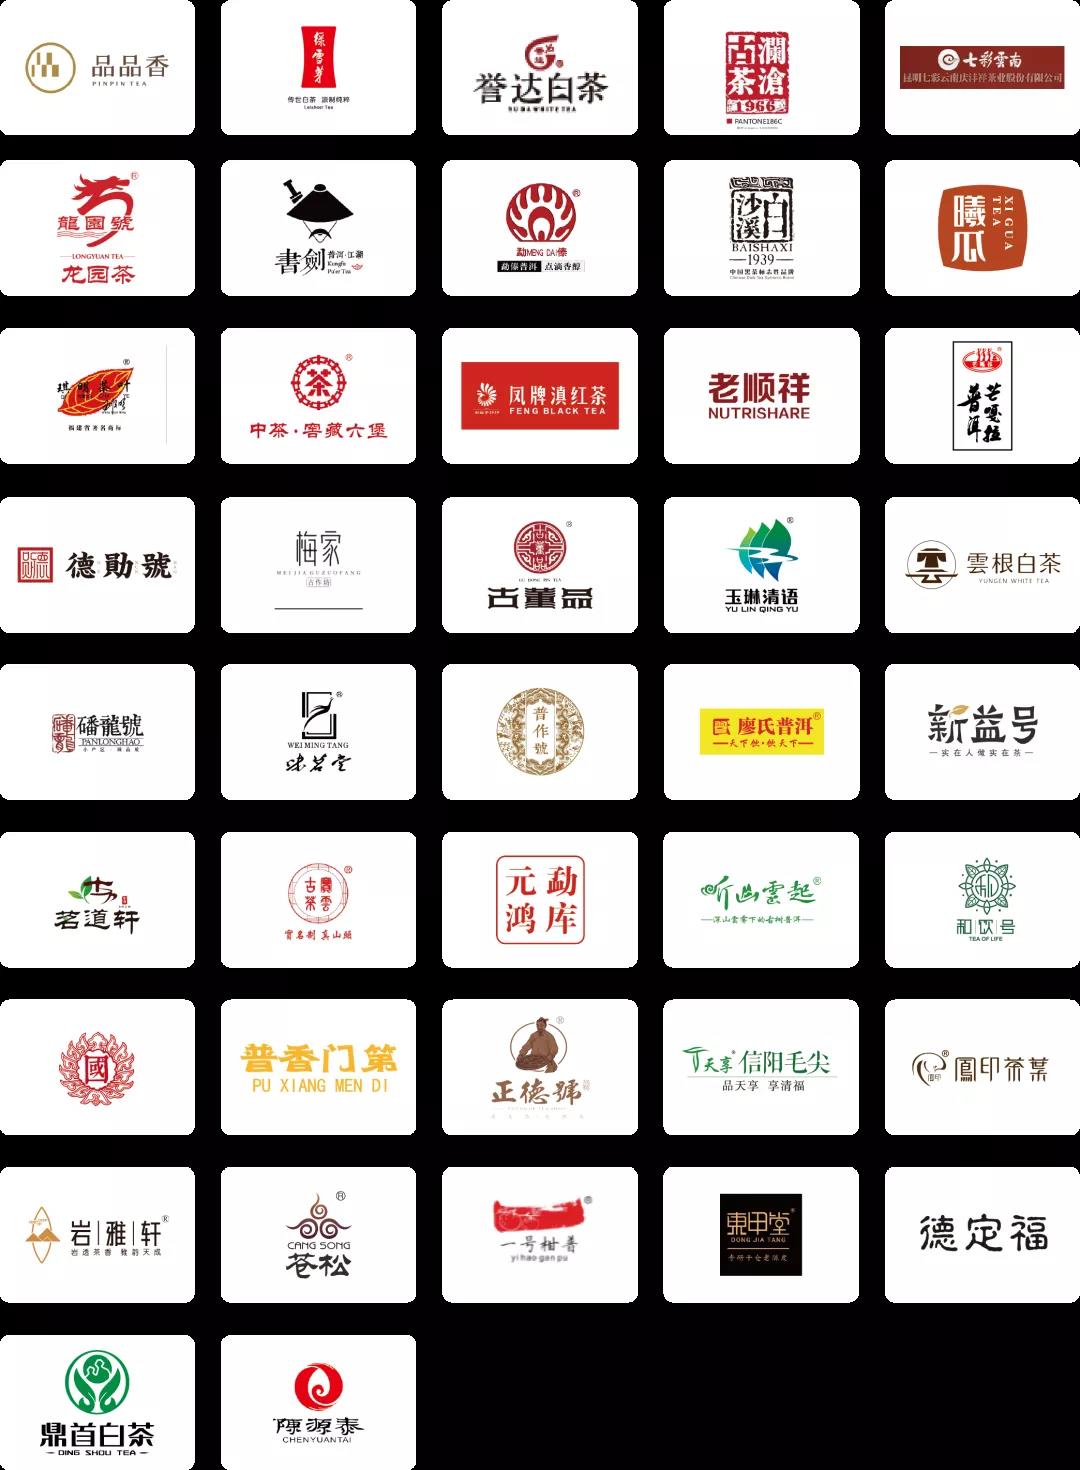 茗聚江城，香飘九州 | 第11届武汉茶博会将于9月10日盛大启幕！